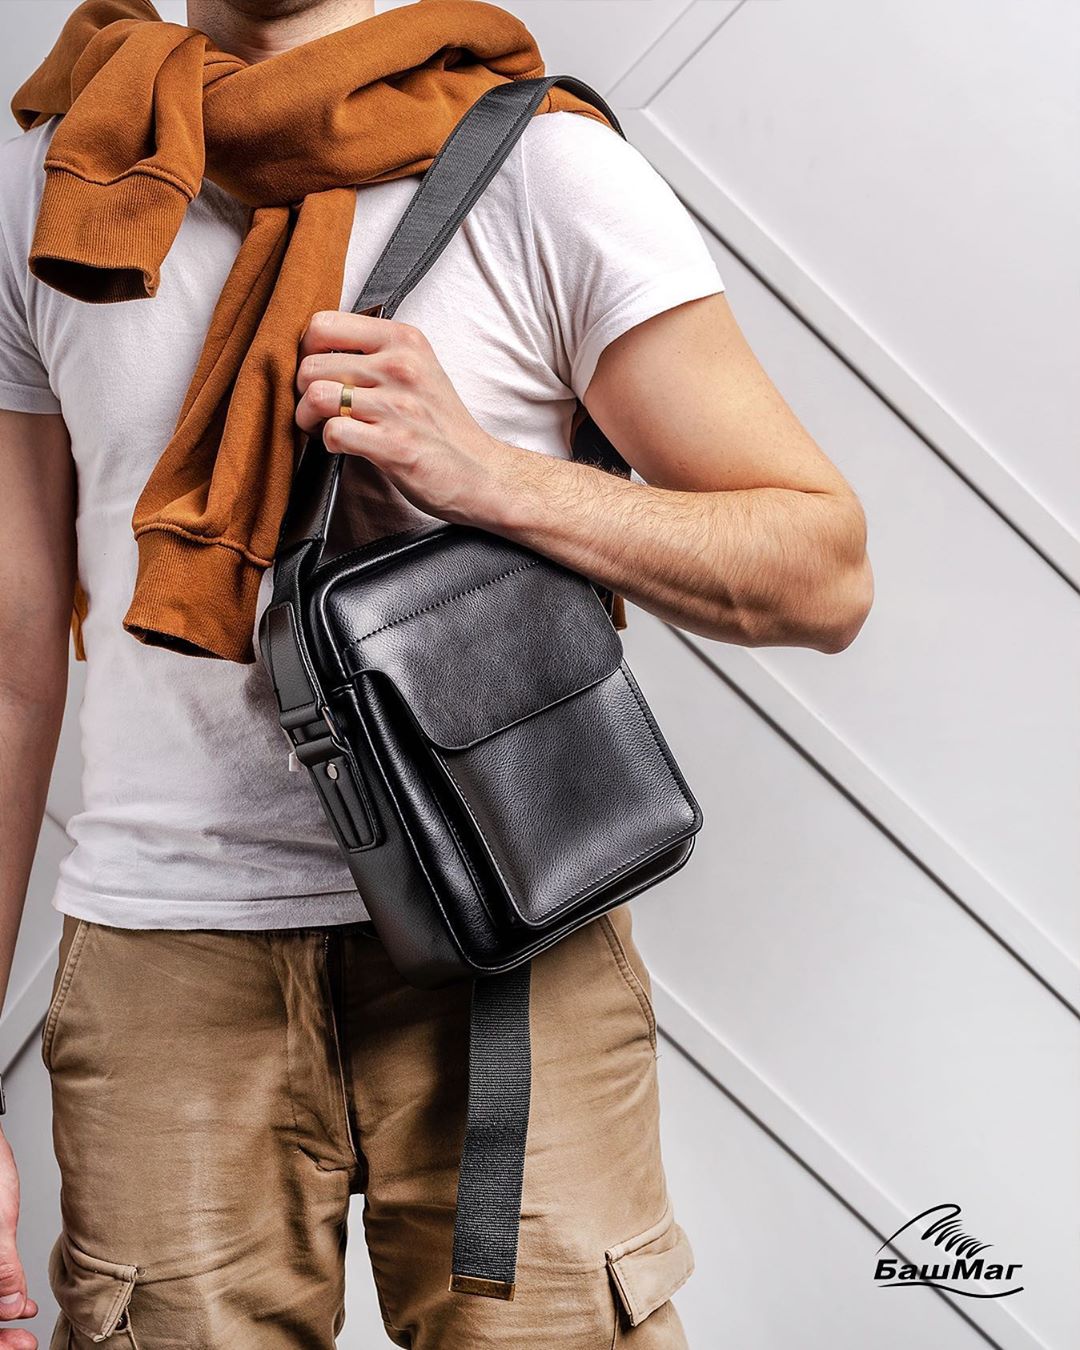 БашМаг - СКИДКИ до 40%‼️👇
Летняя коллекция мужских сумок от авторских брендов компании #BERTEN  и #LONGFIELD - идеальные аксессуары для любого аутфита и лучшие подарки🎁 для любимых❤️
⠀
Изделия выполне...